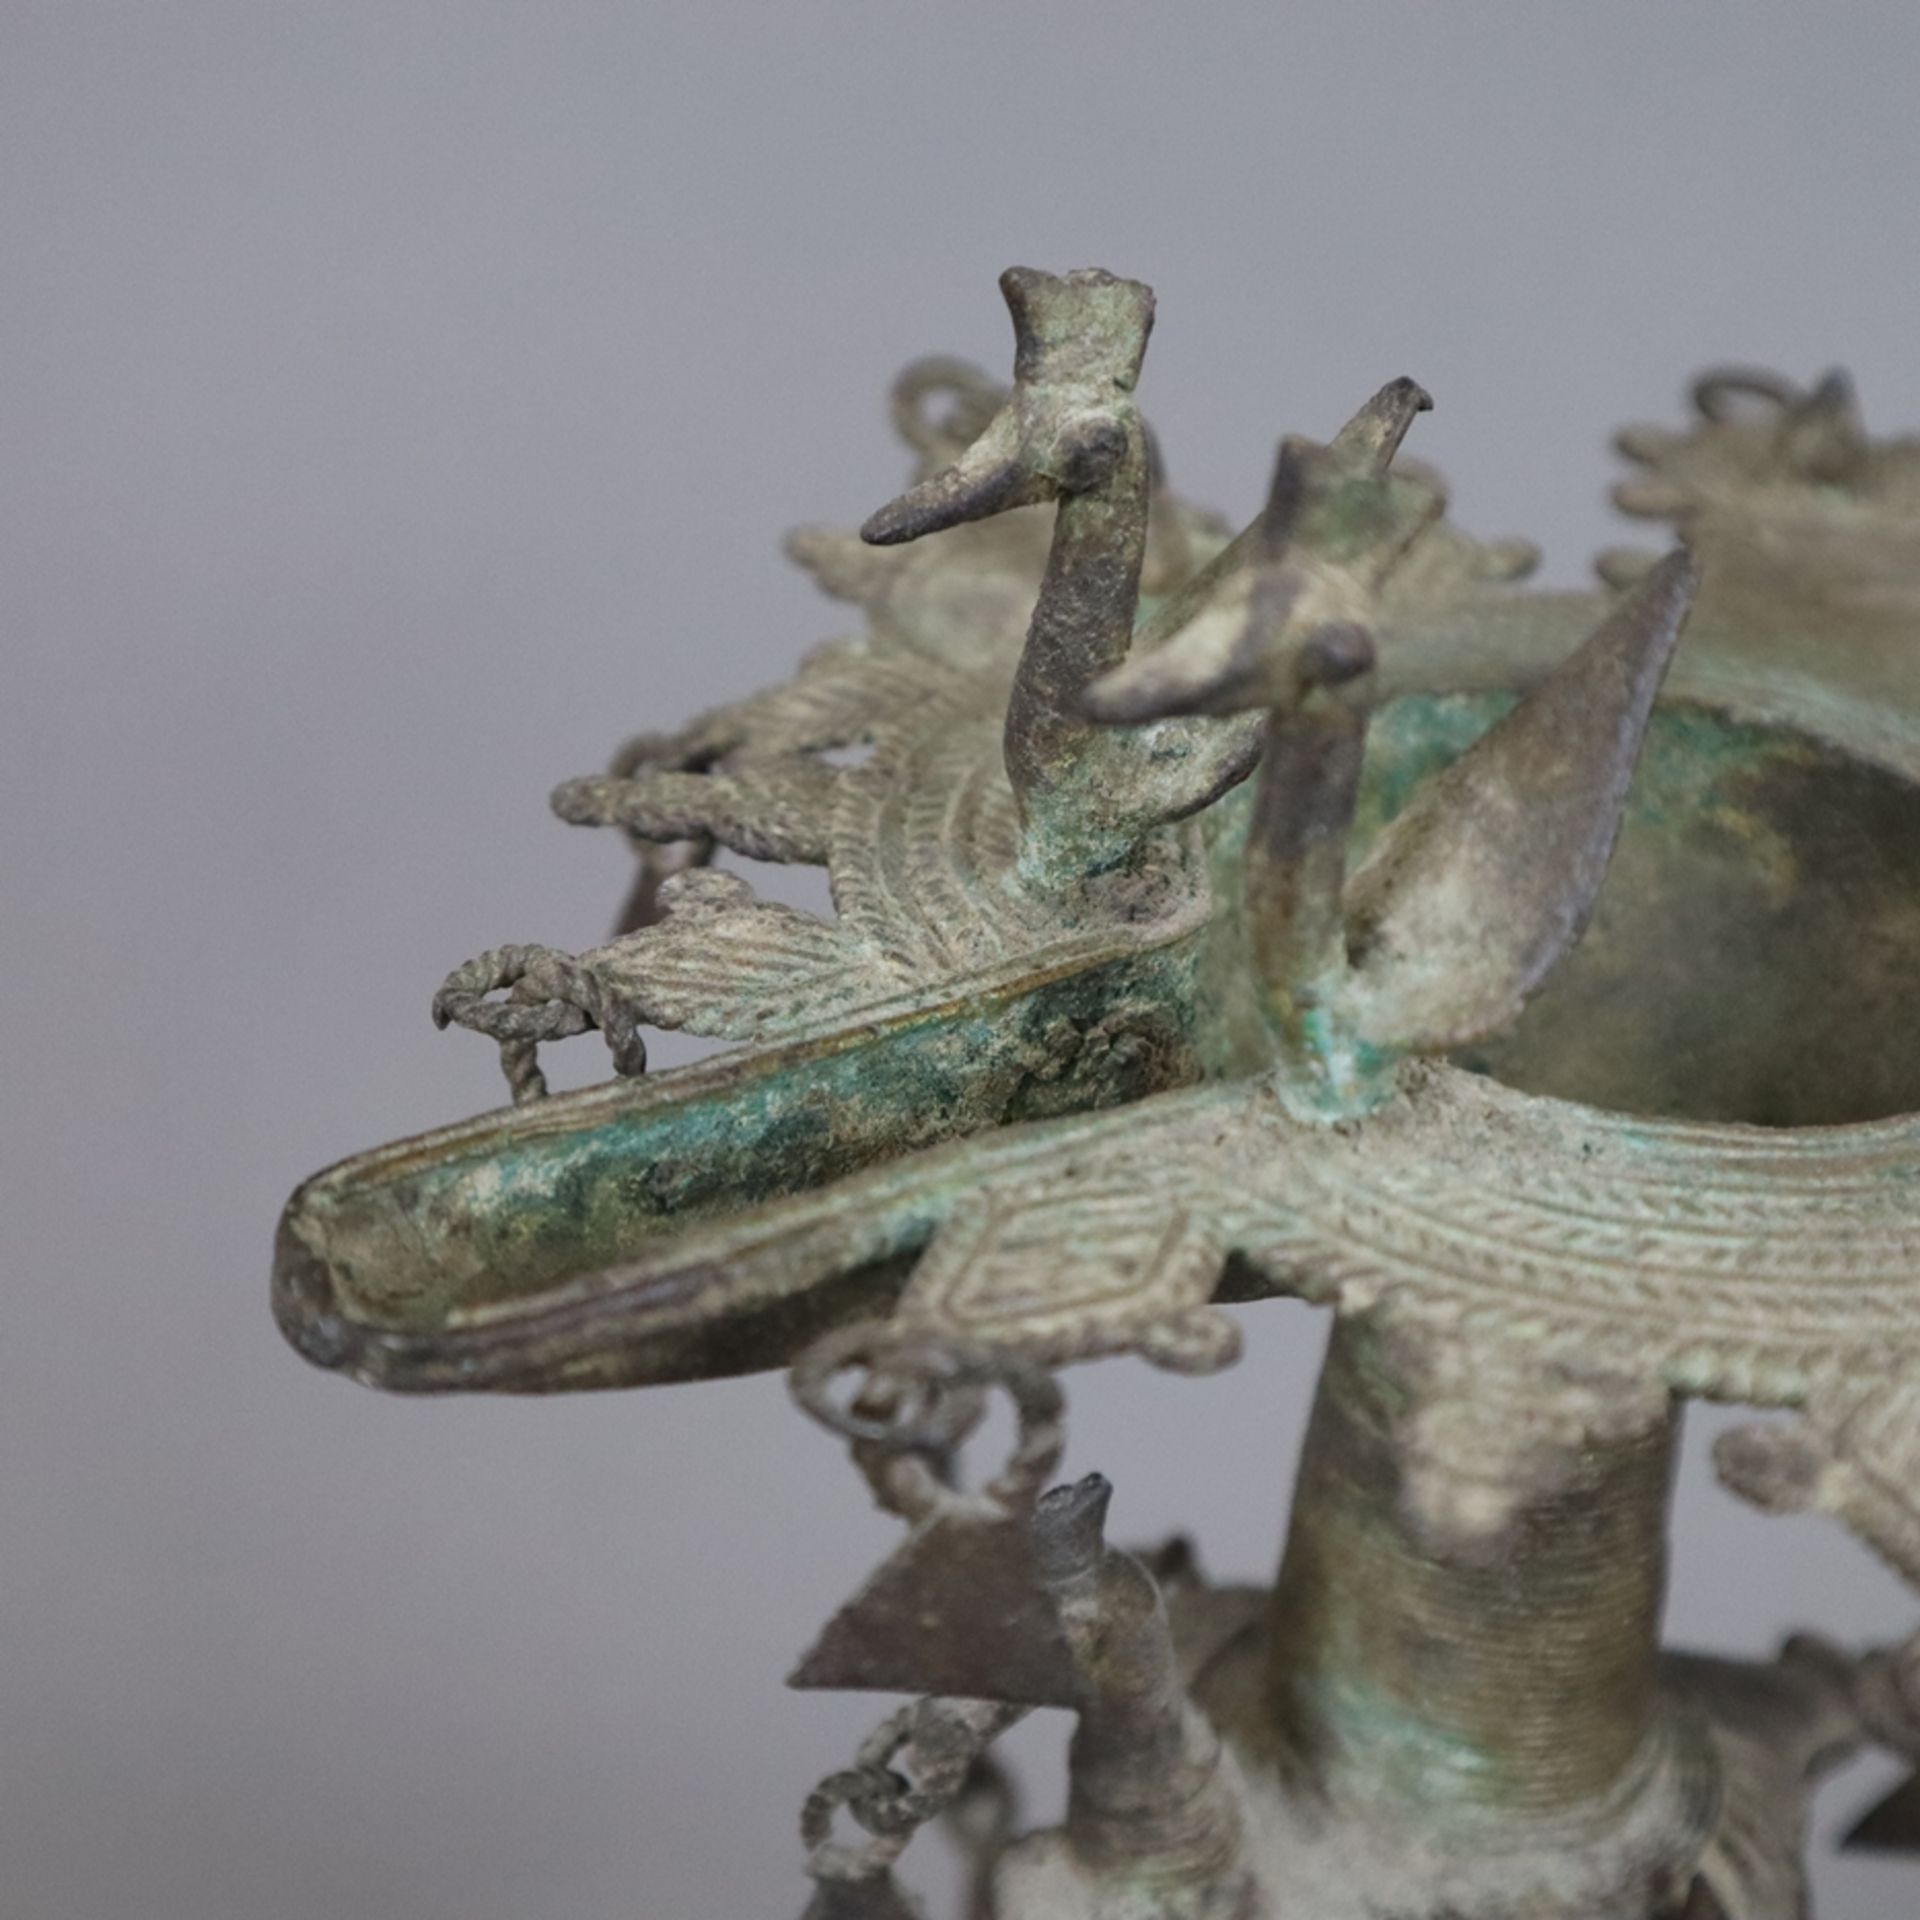 Hohe Öllampe - Indien, Bastar-Region, Bronze mit Alterspatina, über gewölbtem Fuß gegliederter Scha - Image 3 of 9